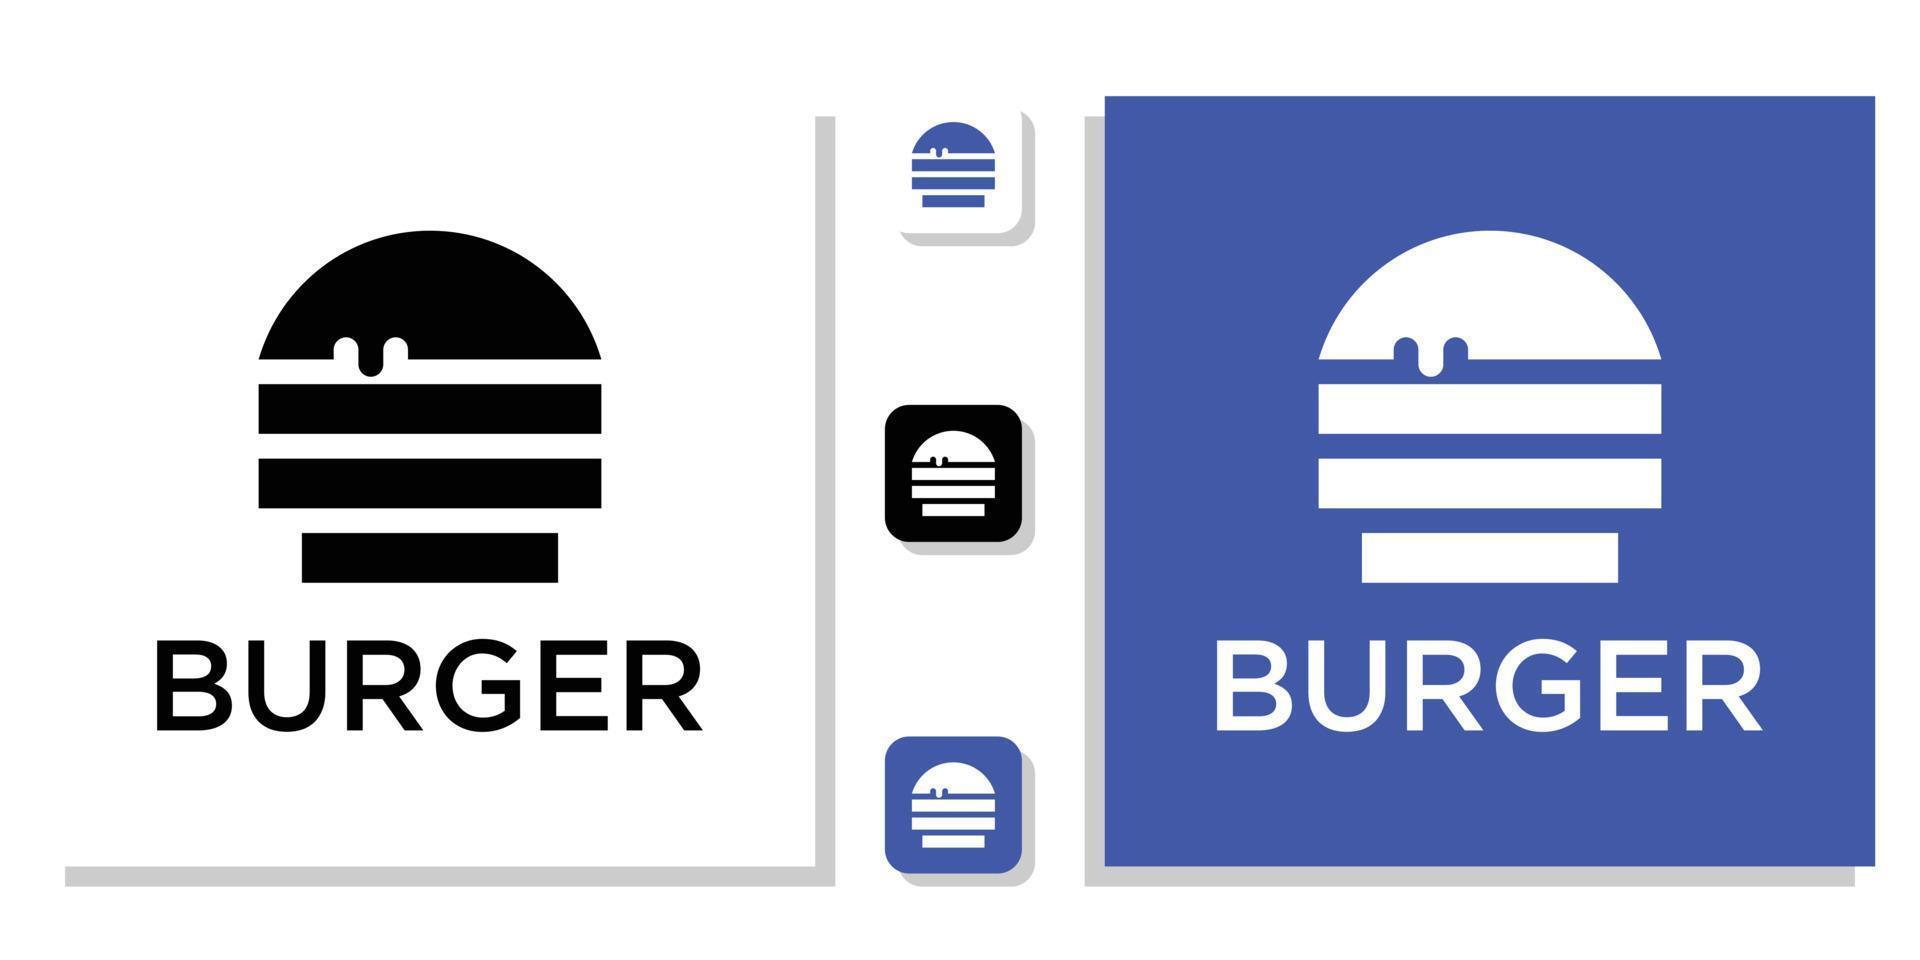 Symbolvorlage für die Online-Lieferung von Lebensmitteln im Burger-Restaurant vektor